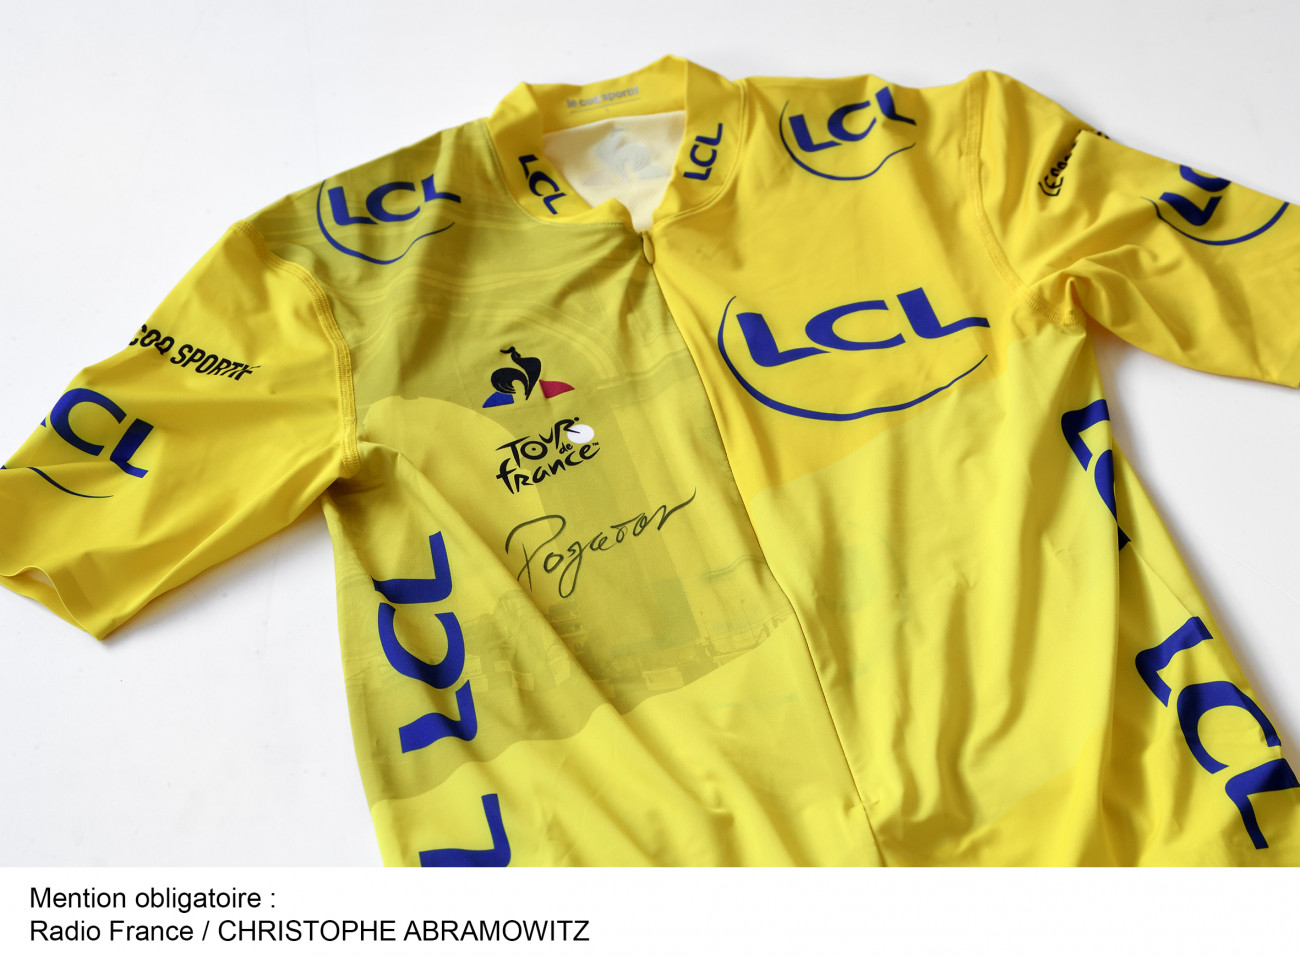 maillot jaune du vainqueur du Tour de France 2020, Tadej Pogacar